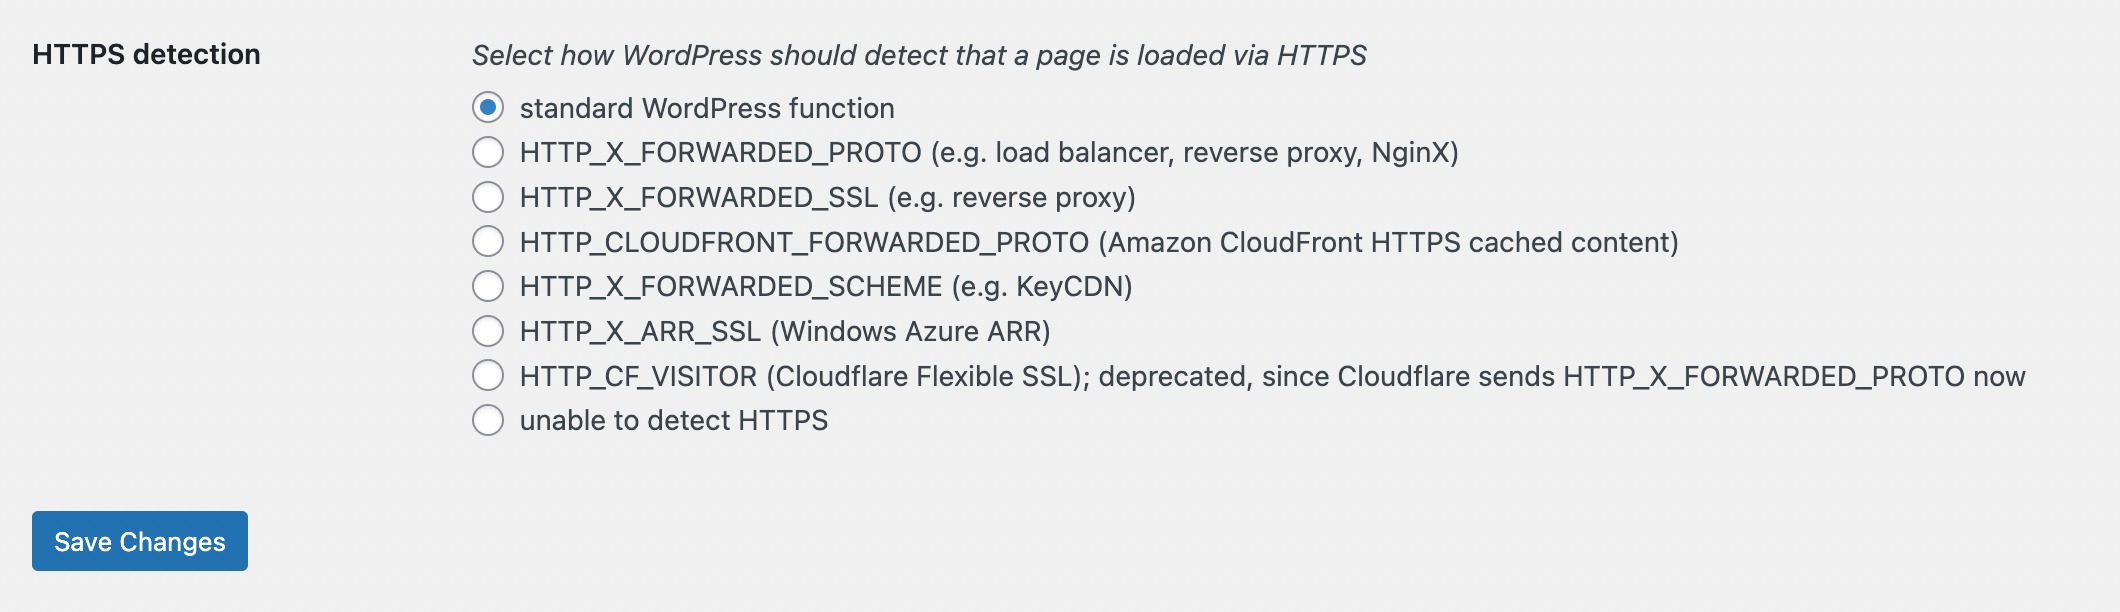 HTTPS detection